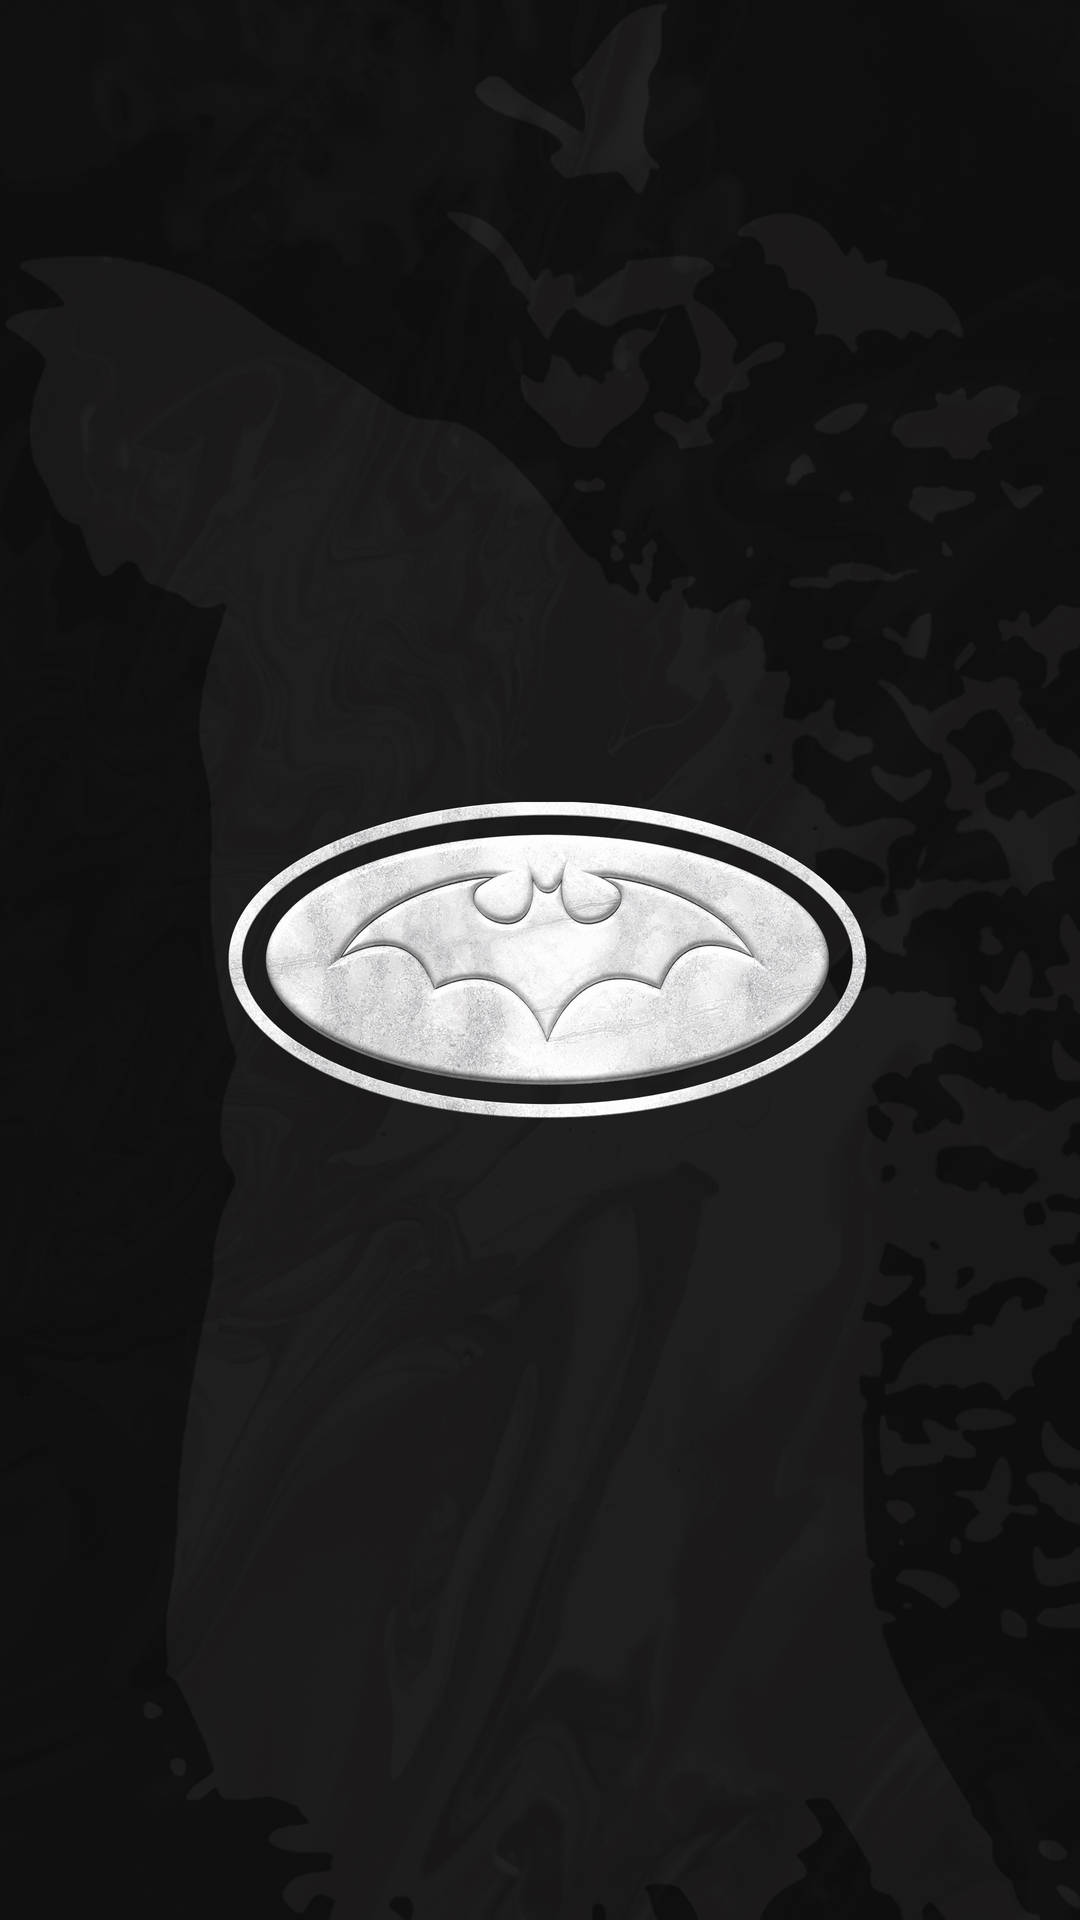 Fondode Pantalla Negro De Gotham En 4k Con El Logo De Batman En Blanco. Fondo de pantalla